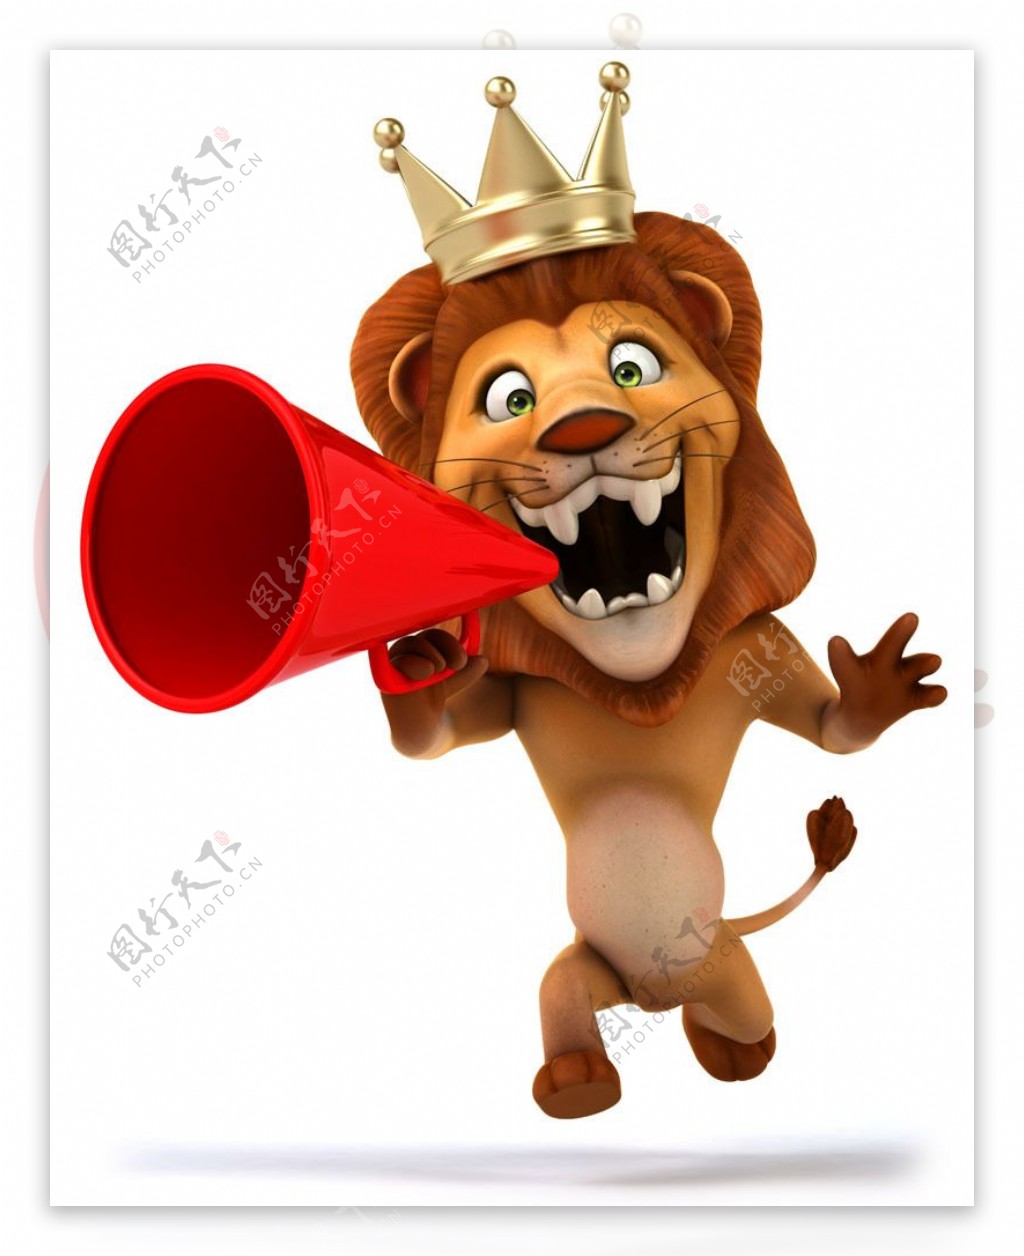 戴皇冠喊喇叭的卡通狮子图片